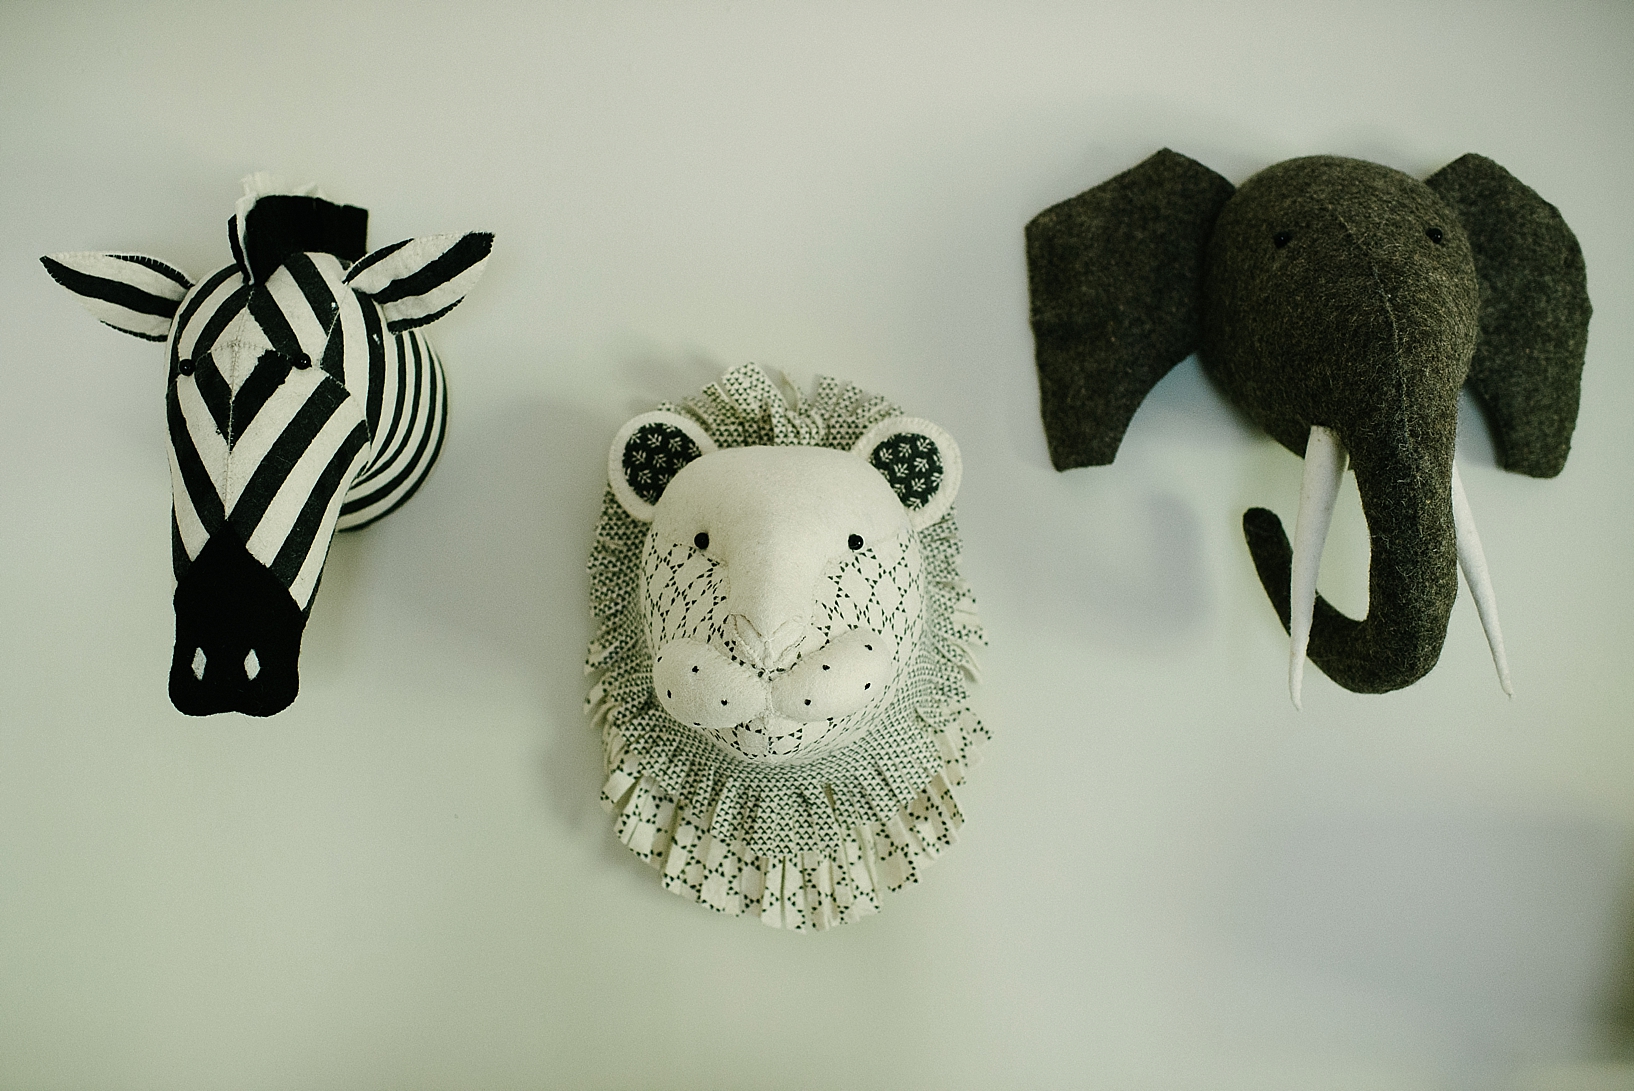 stuffed zebra, lion, and elephant heads on nursery wall